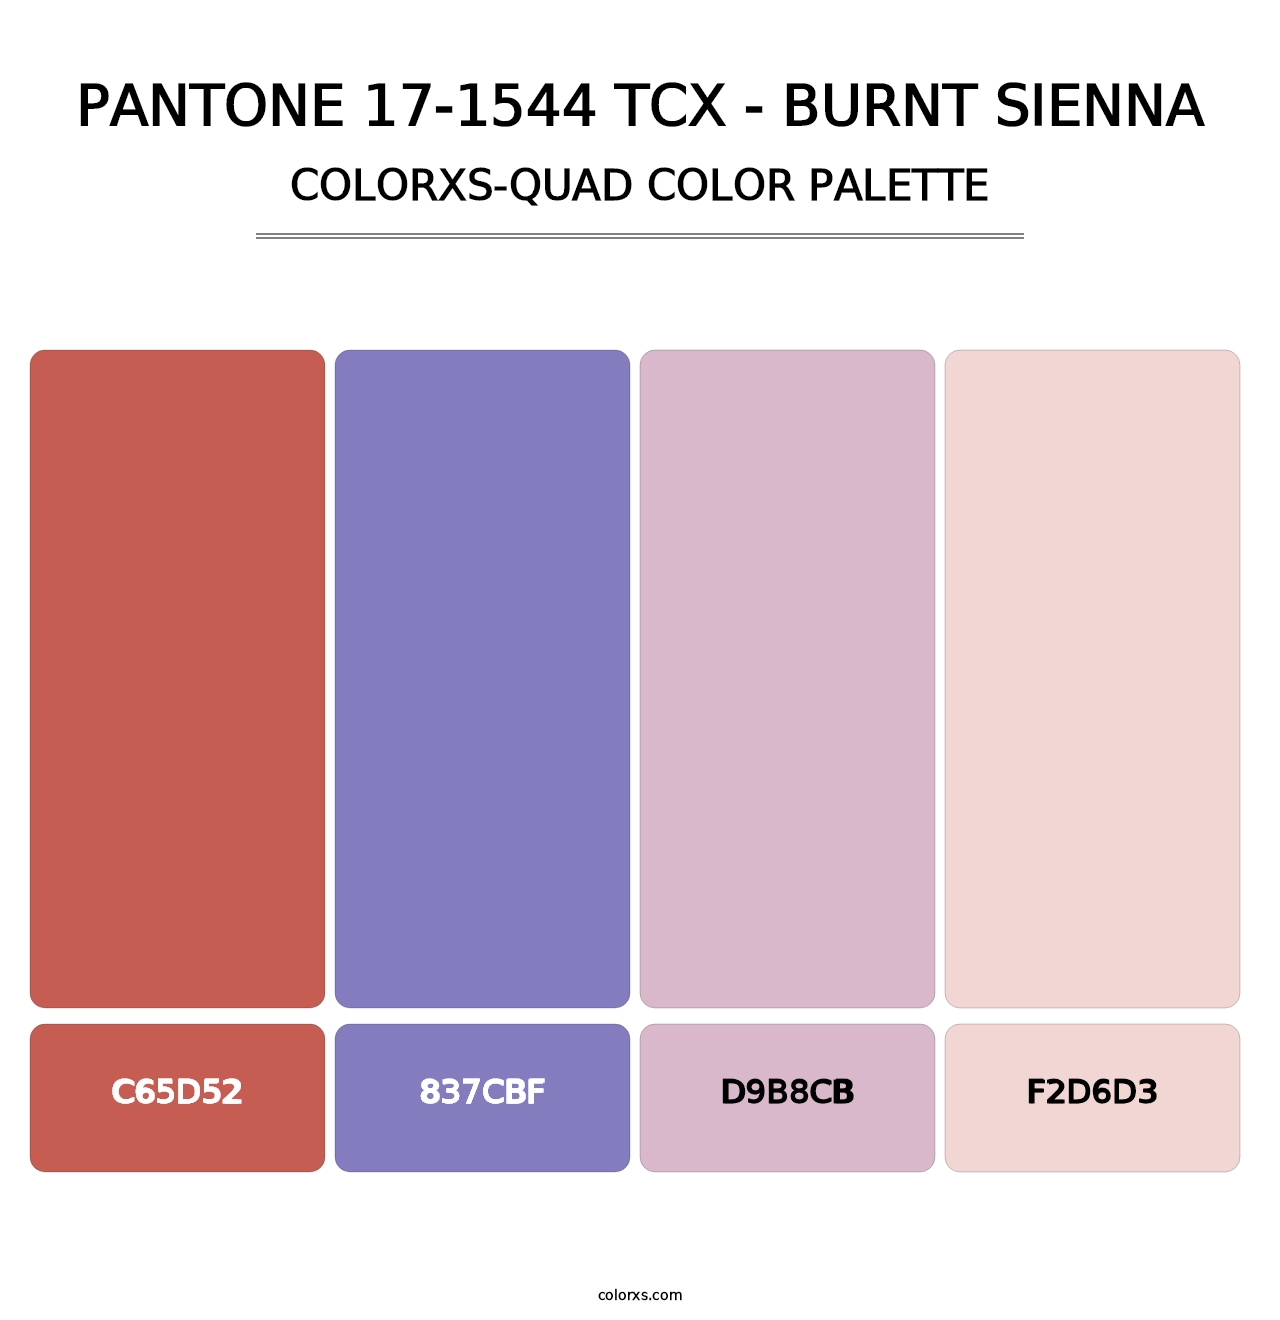 PANTONE 17-1544 TCX - Burnt Sienna - Colorxs Quad Palette